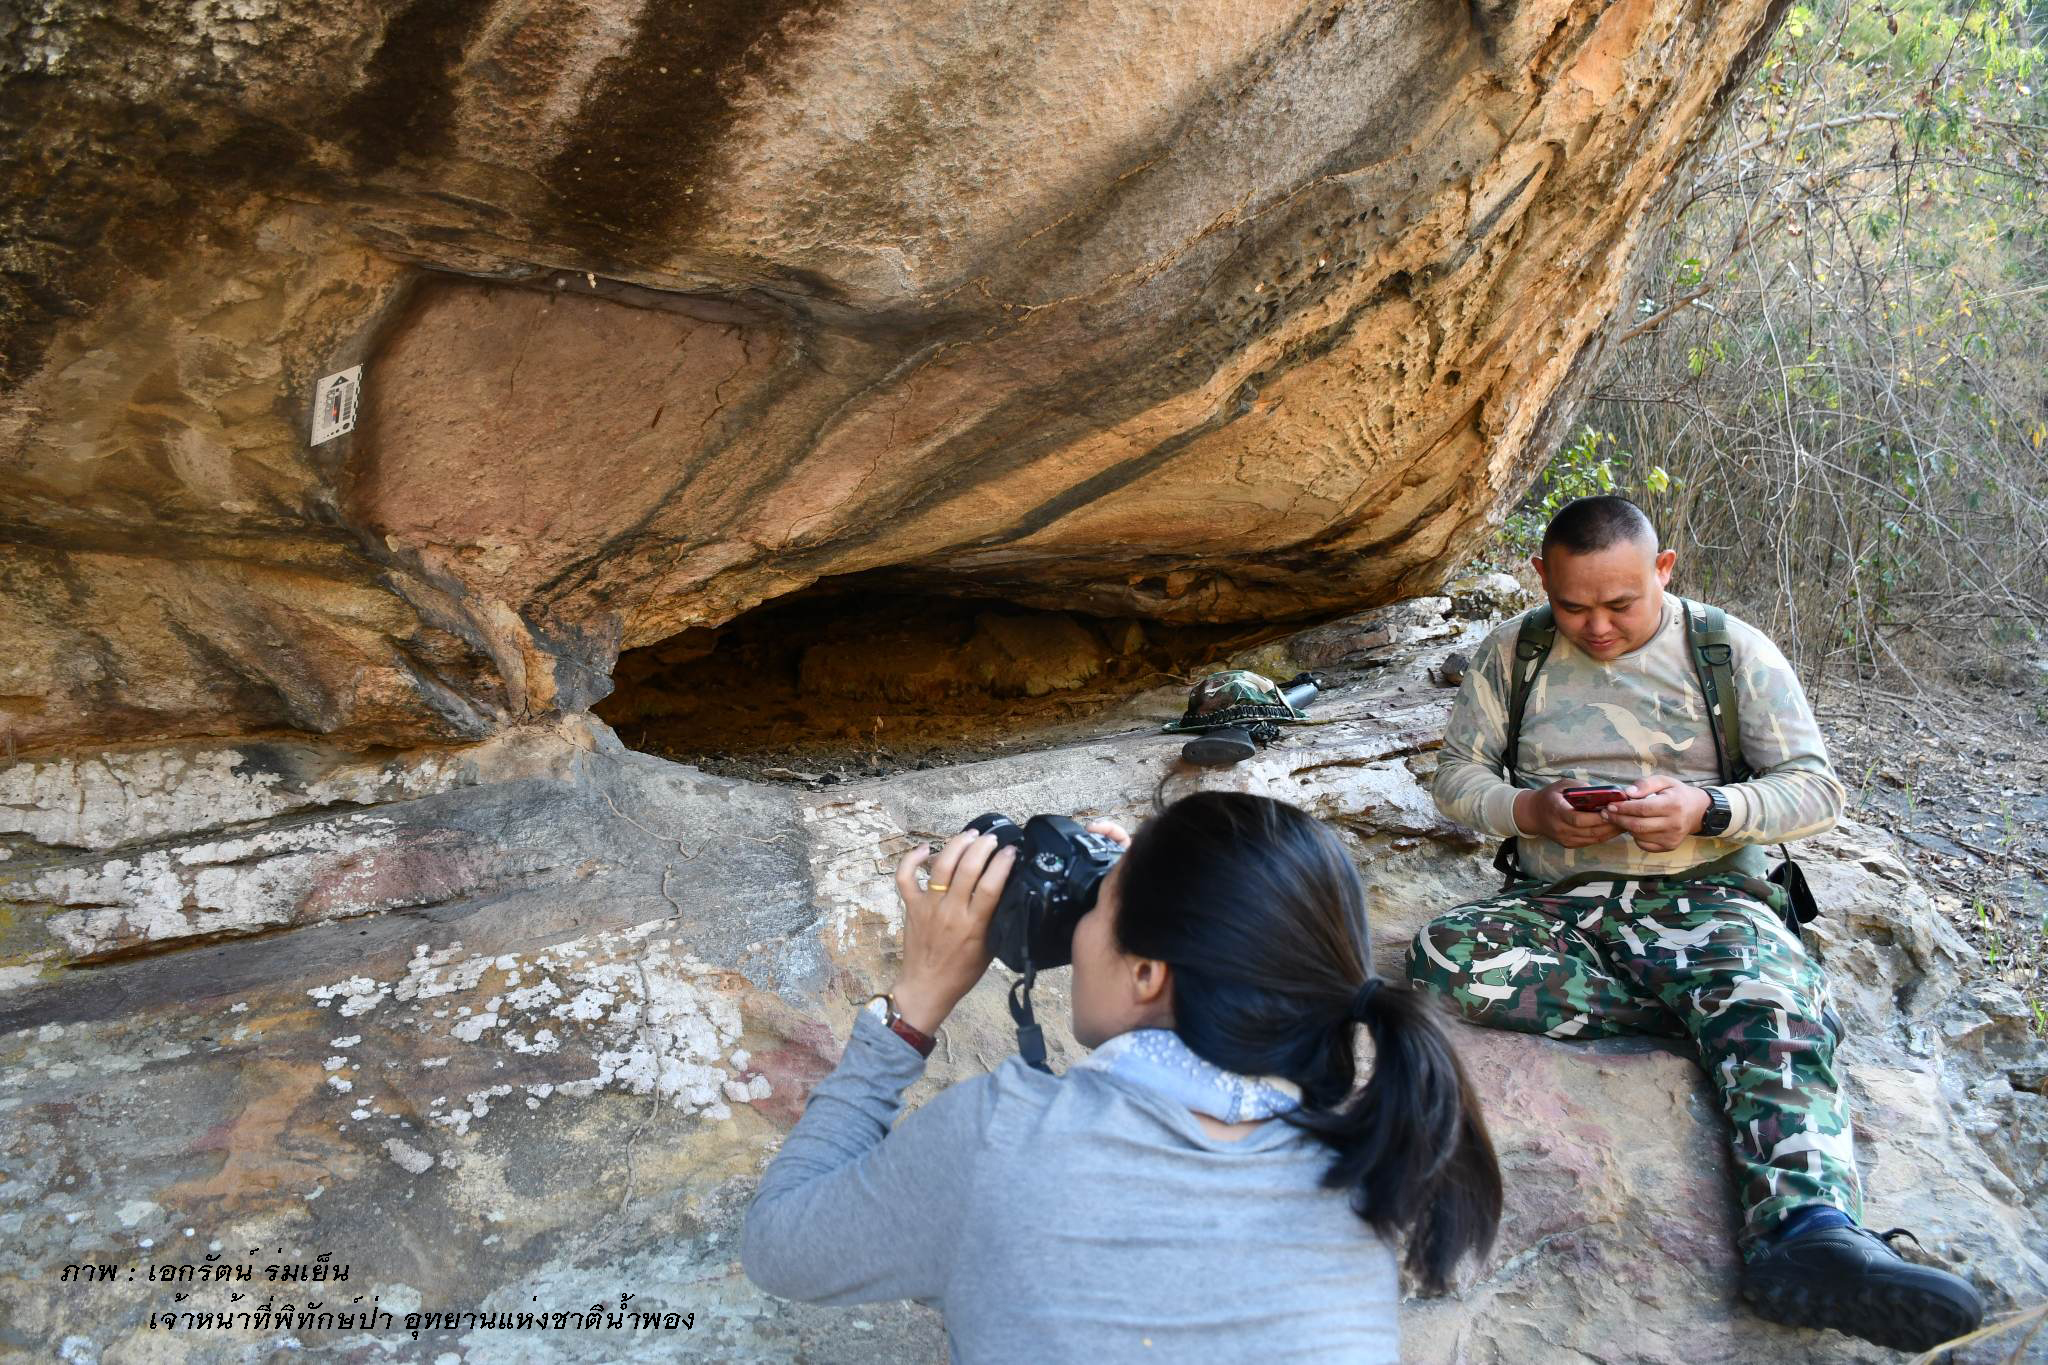 สำรวจแหล่งภาพเขียนสีเพิงหินร่มเย็น ในเขตอุทยานแห่งชาติน้ำพอง จังหวัดขอนแก่น